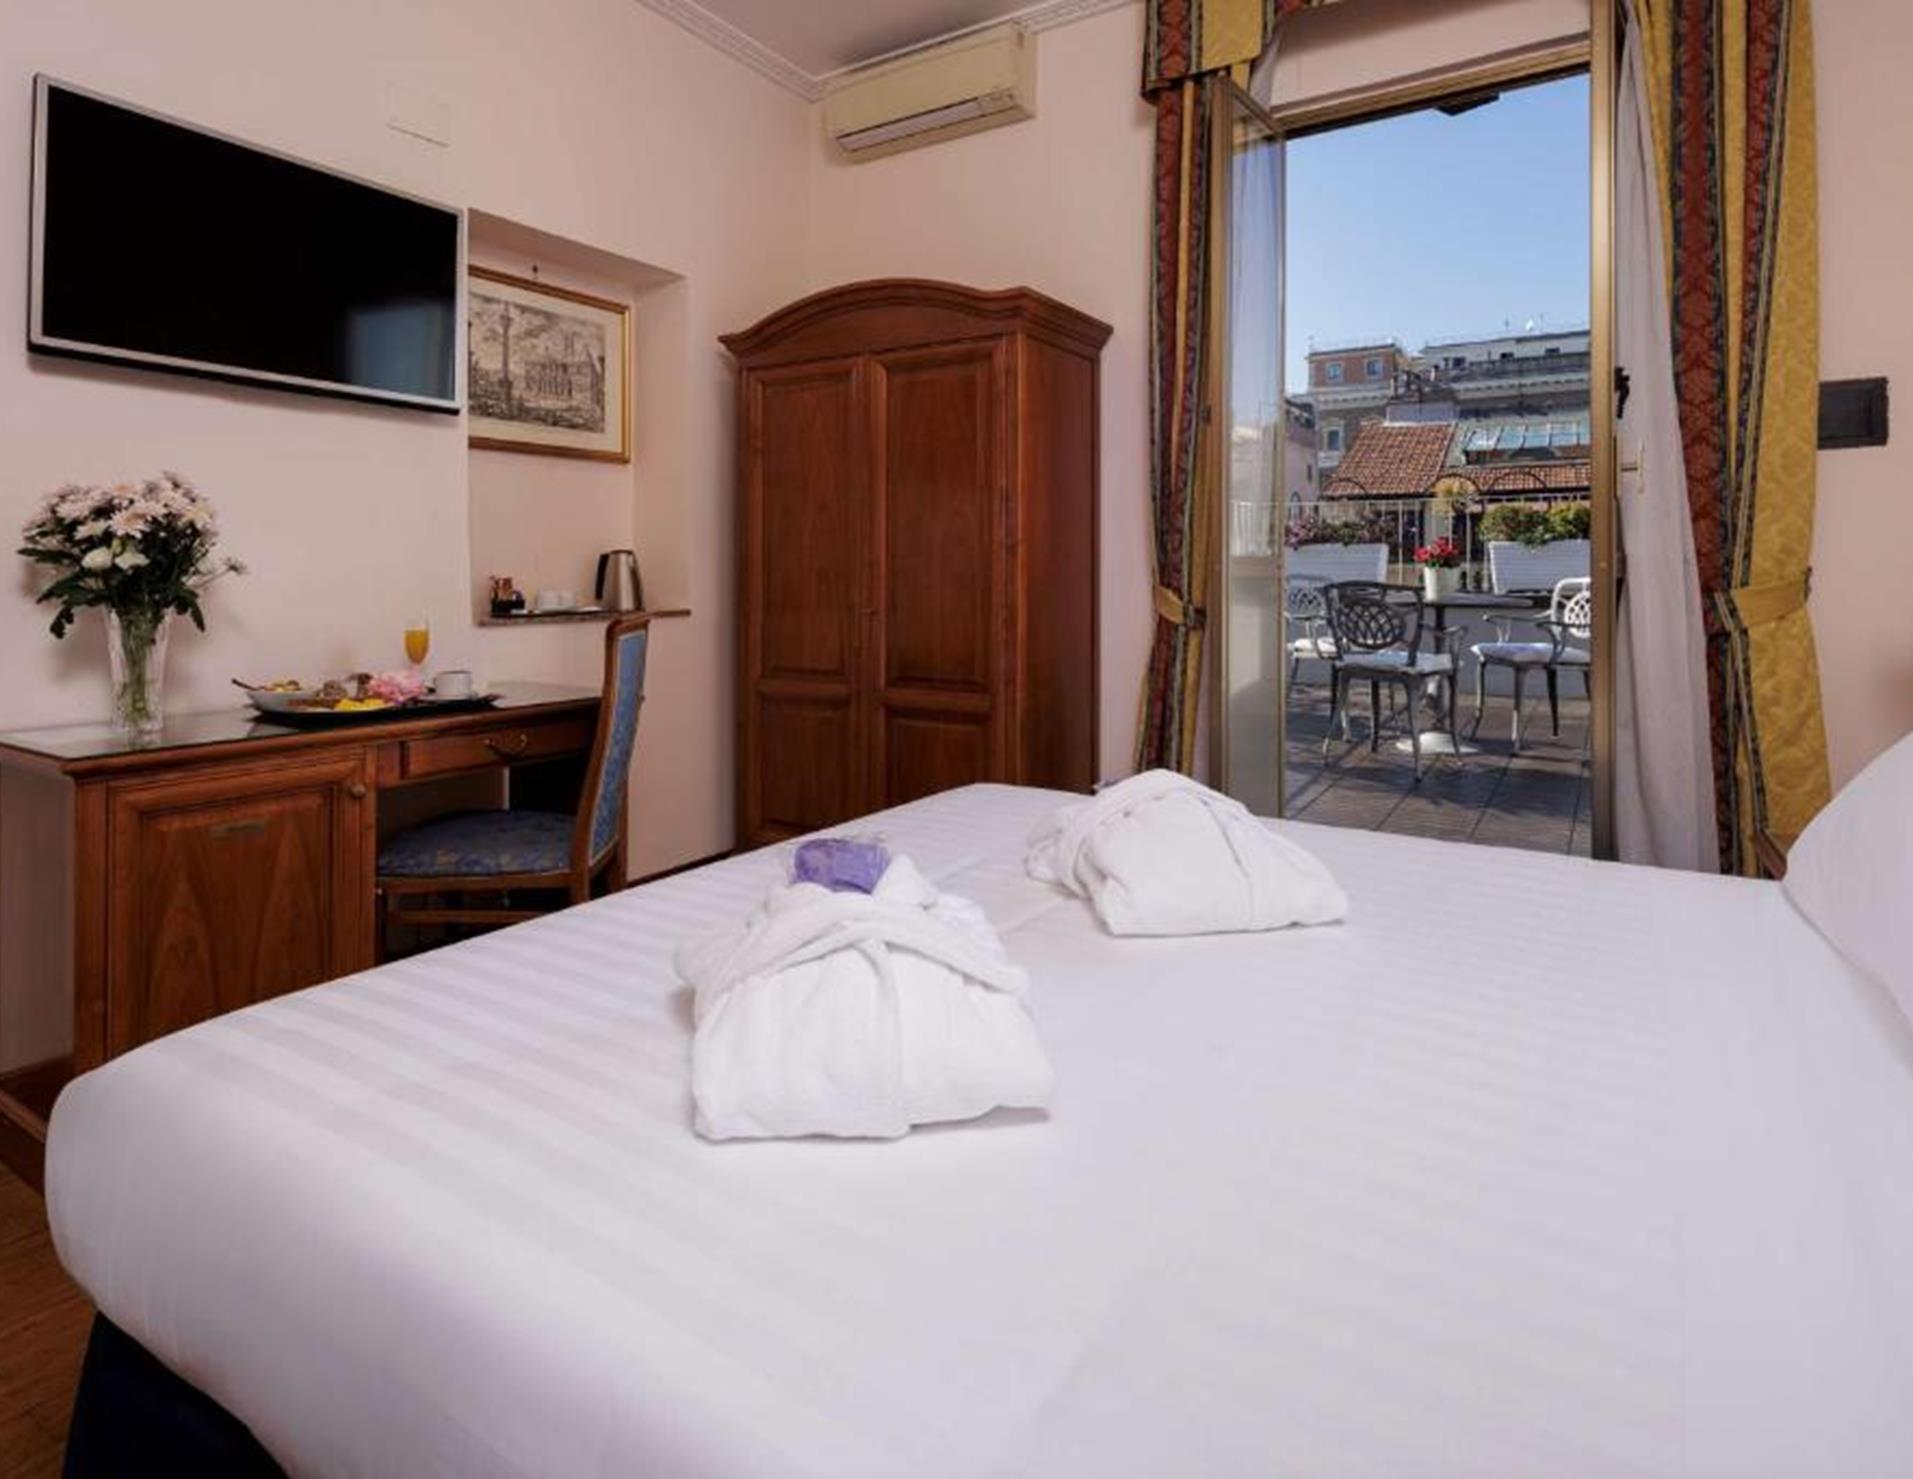 Hotel Raffaello - Room 8